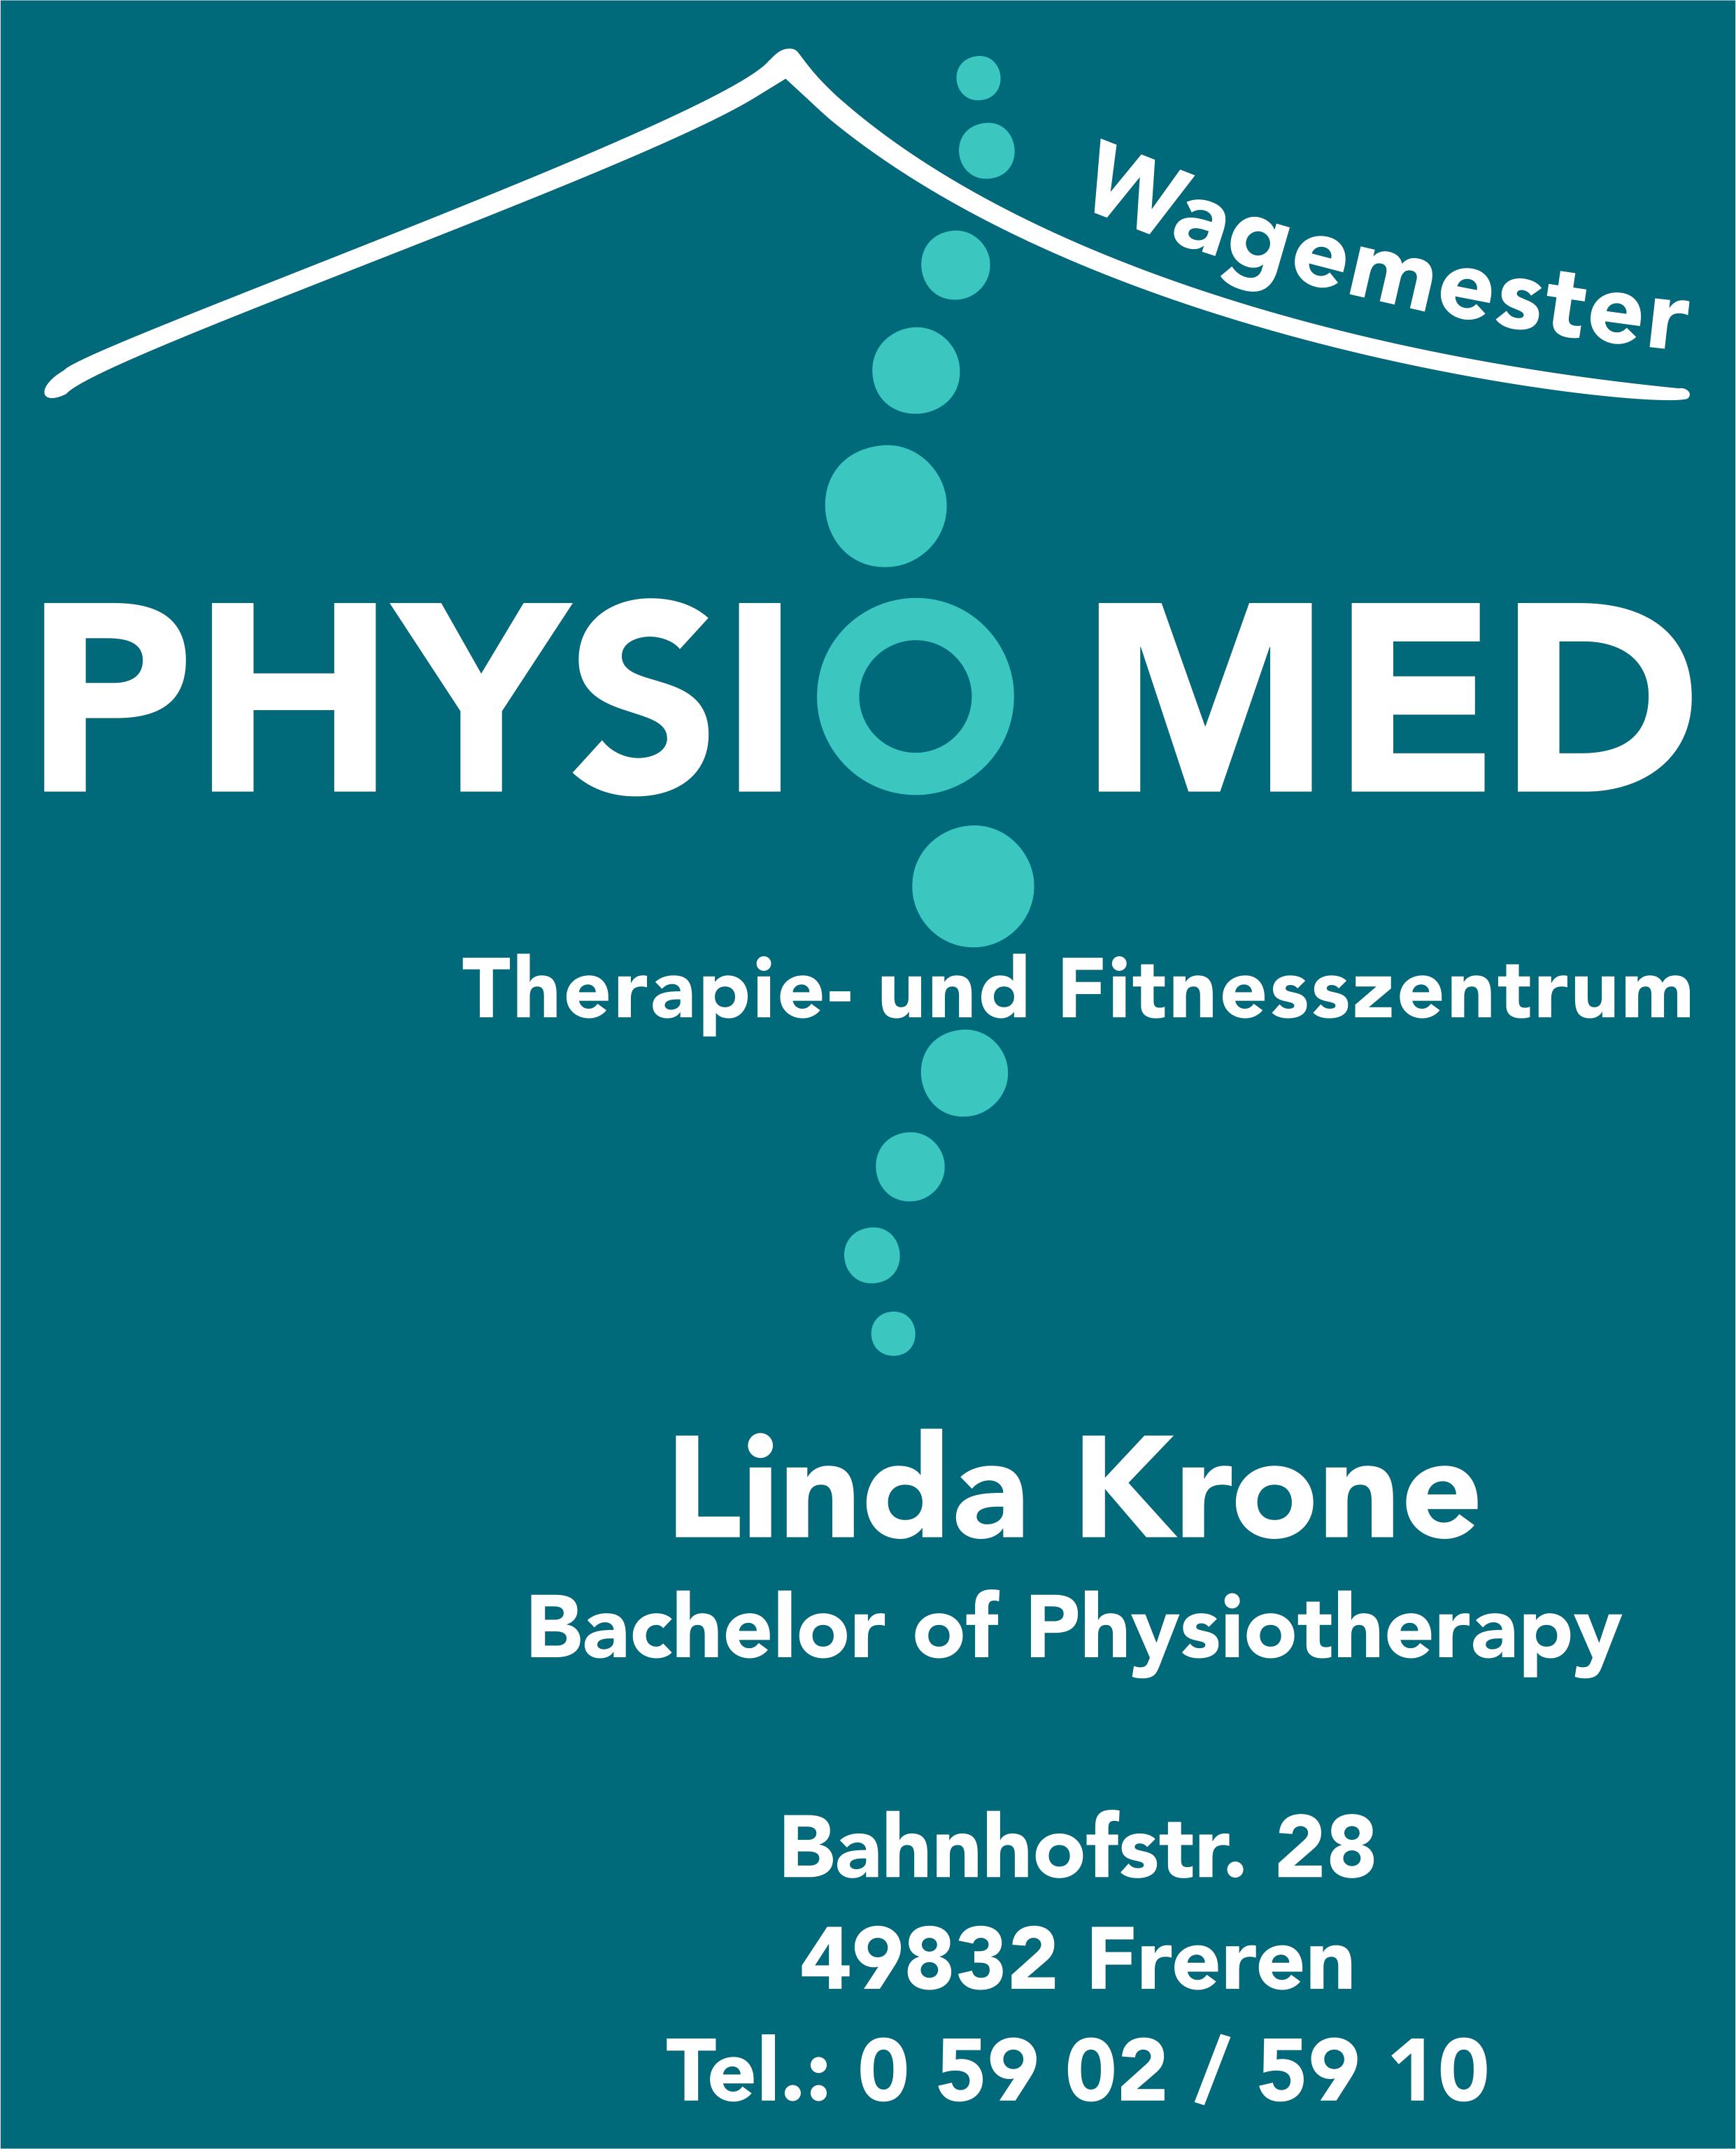 Bilder PhysioMed Wagemester | Therapie- und Fitnesszentrum | Linda Krone